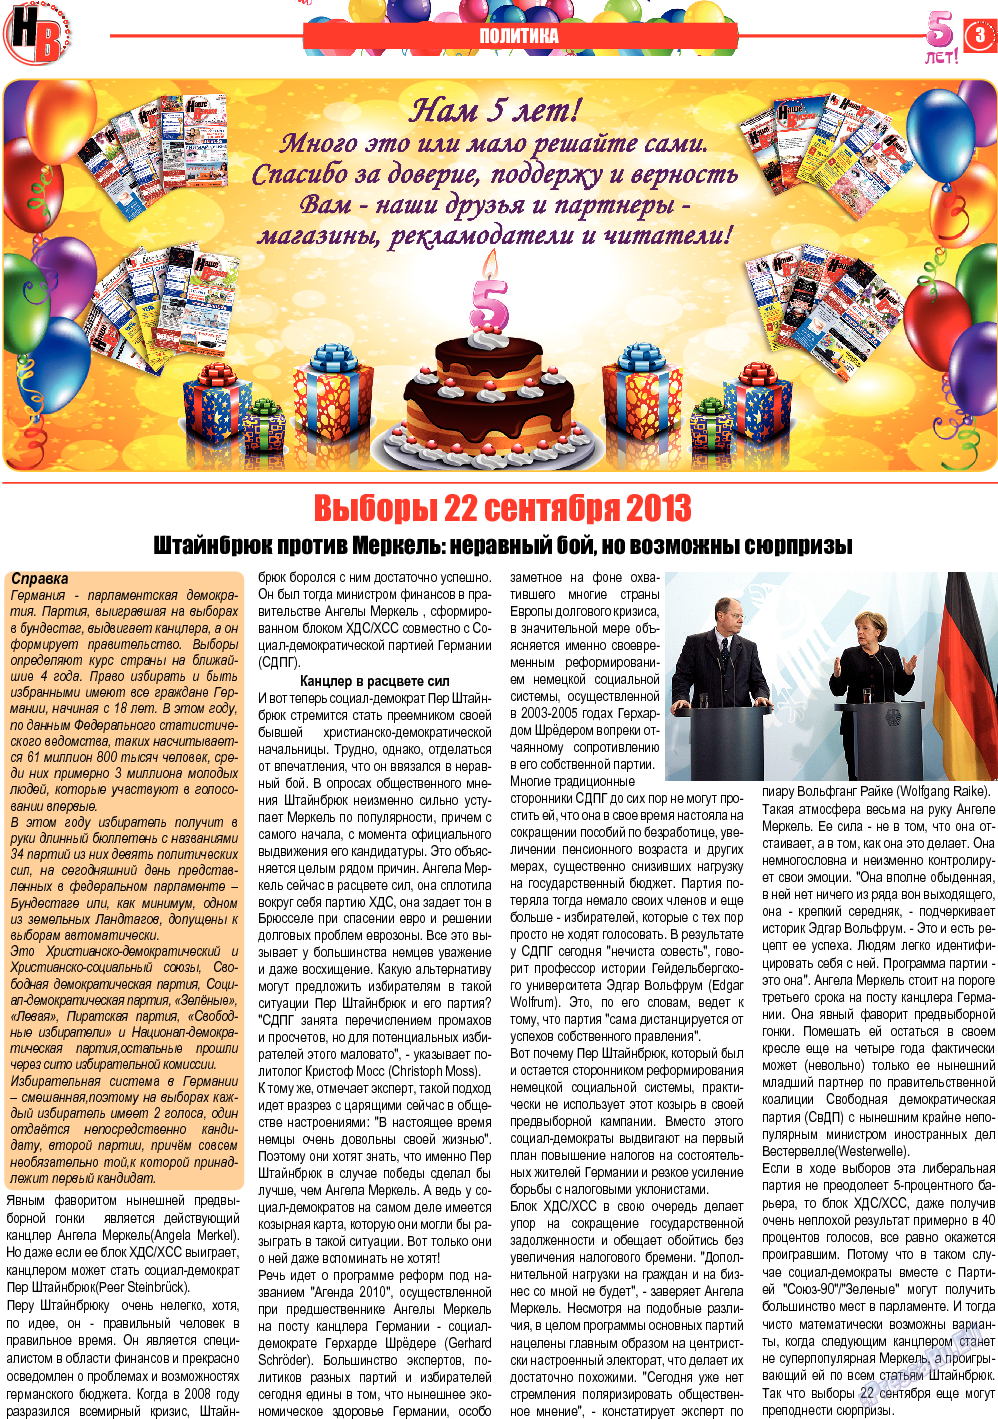 Наше время, газета. 2013 №9 стр.3